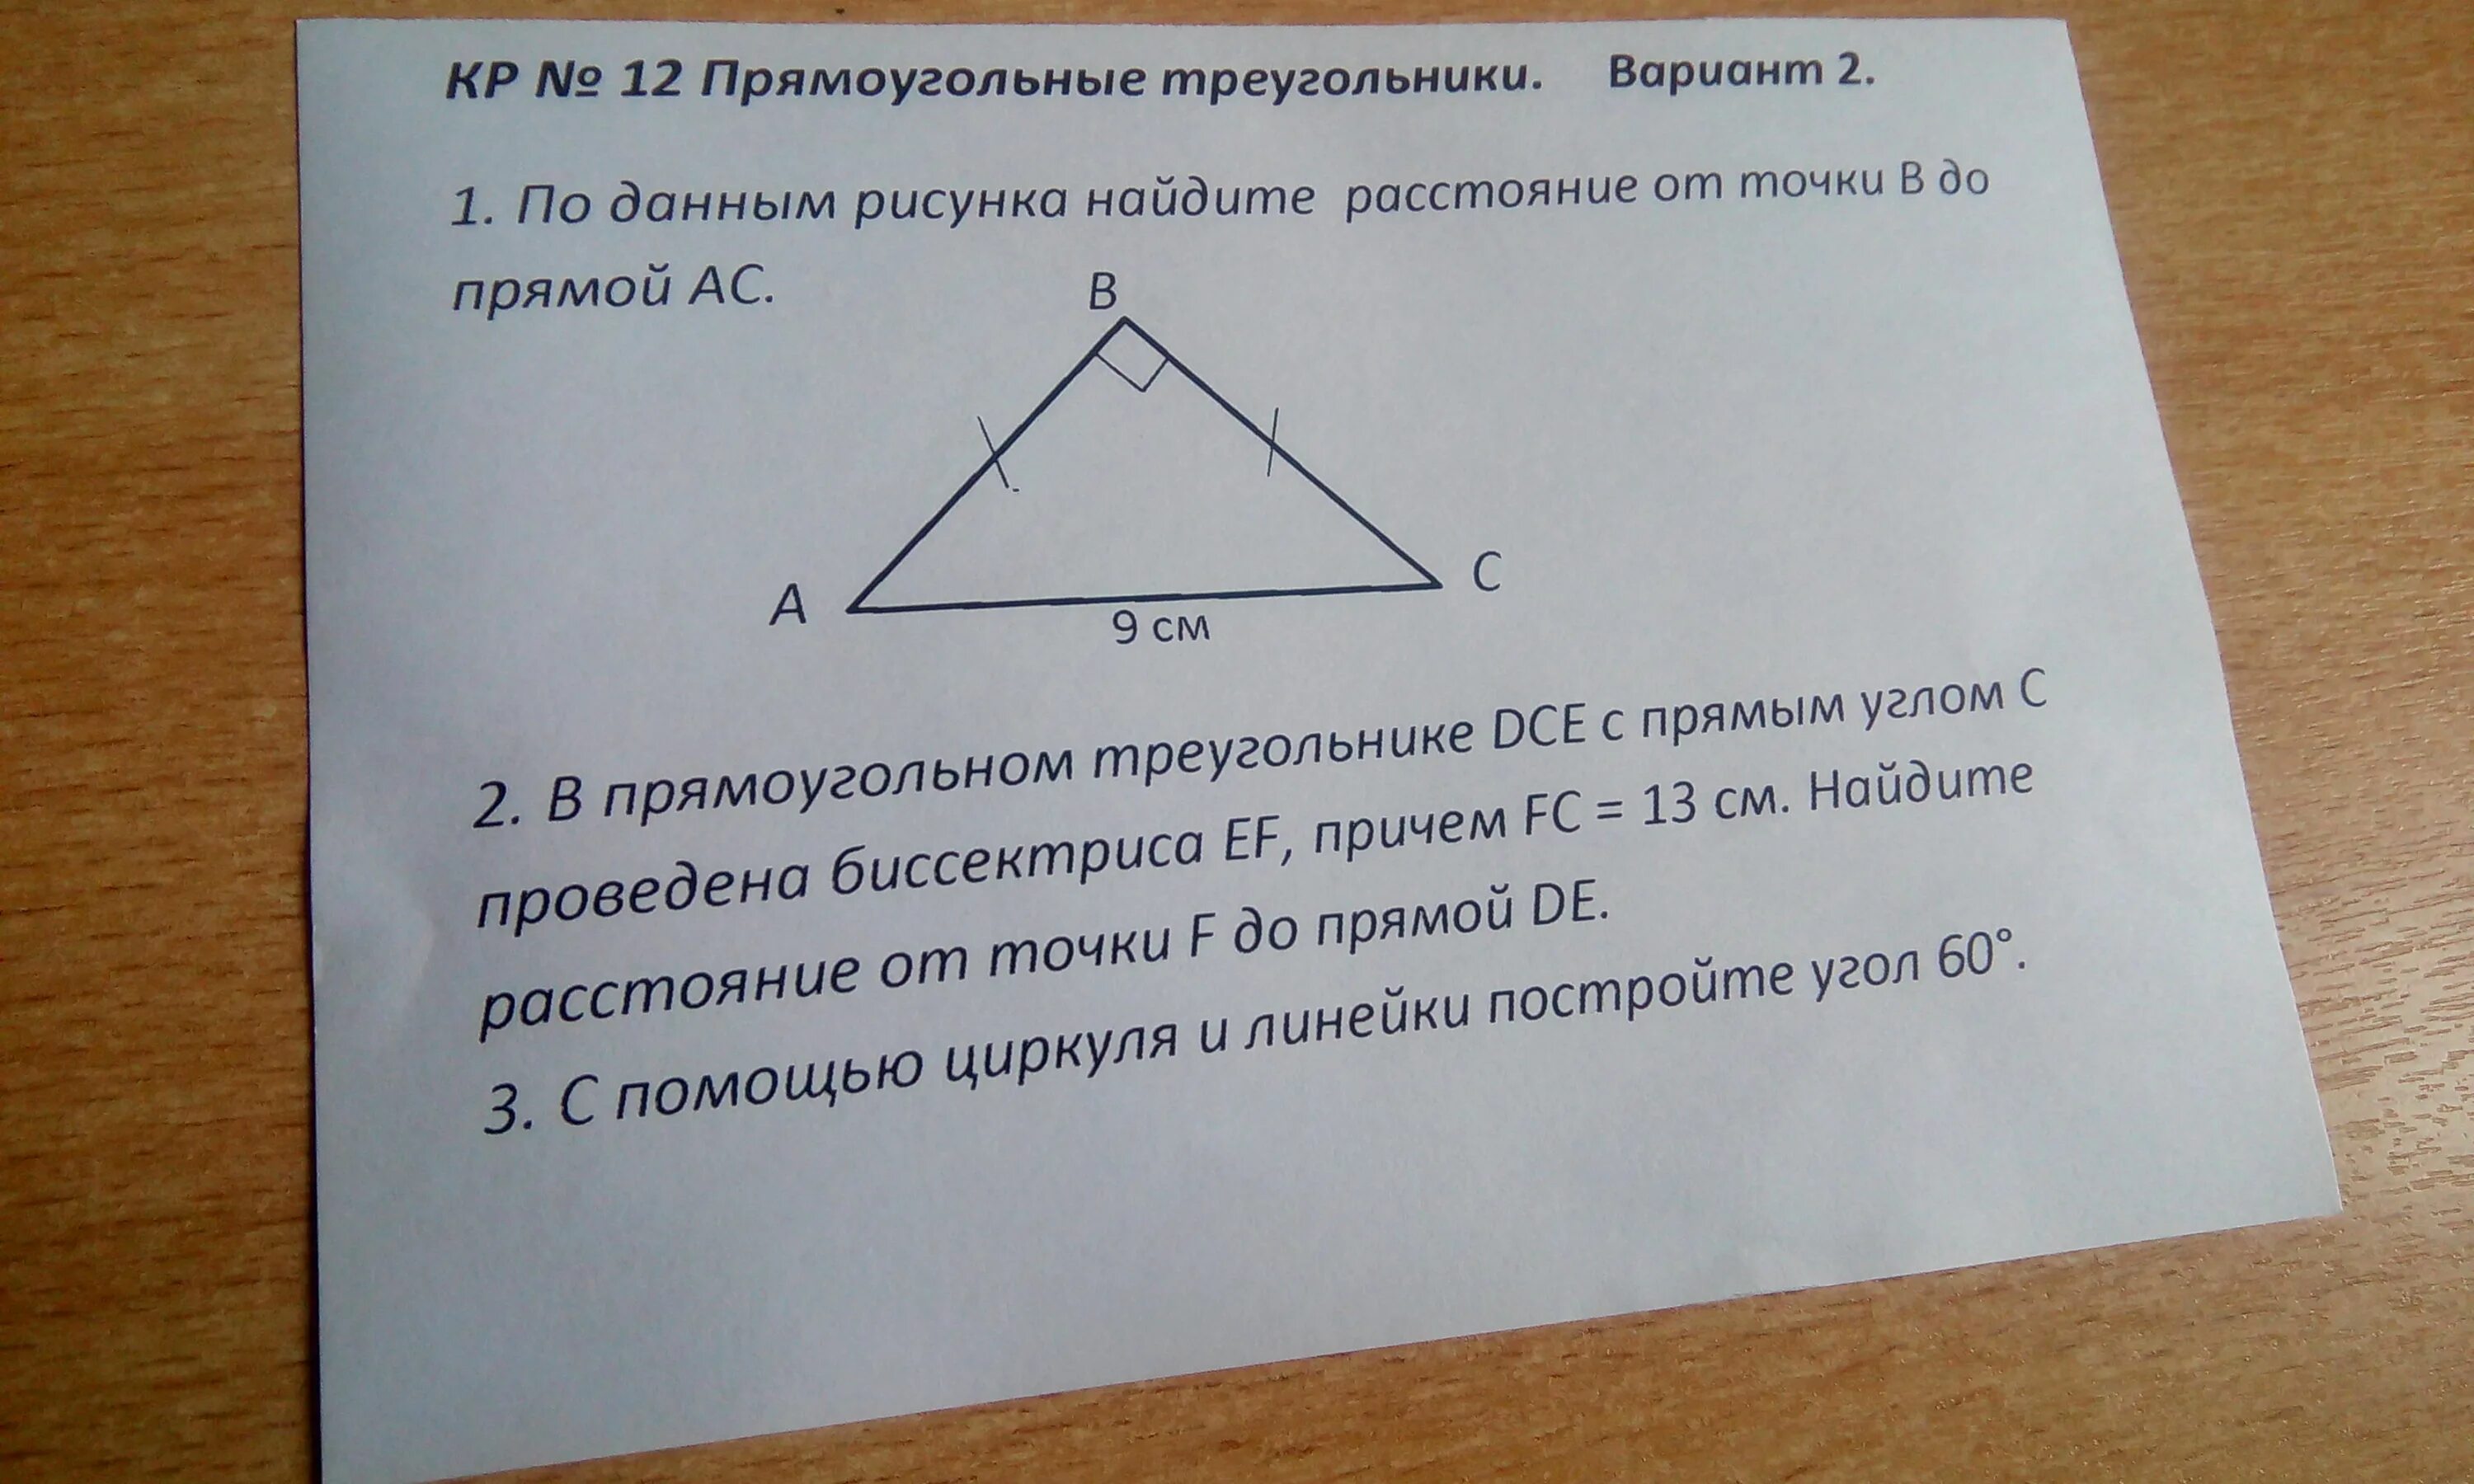 В прямоугольном треугольнике DCE С прямым углом. В прямоугольном треугольнике дсе. В прямоугольном треугольнике DCE С прямым углом c. В прямоугольном треугольнике дсе с прямым углом с.